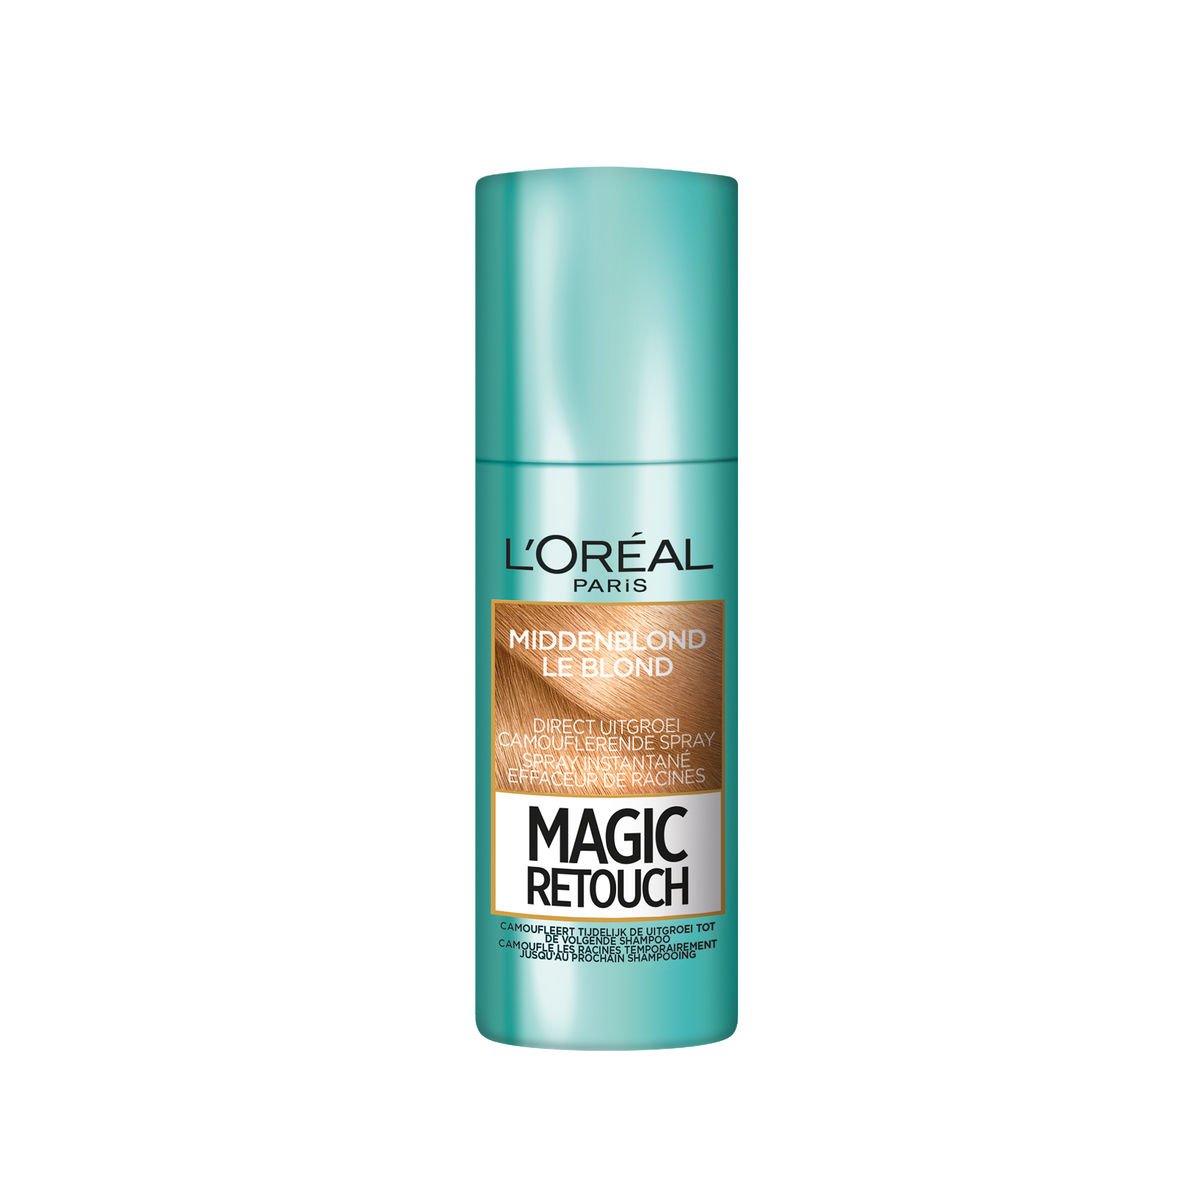 L'Oréal Paris Magic Retouch Blond Camouflerende Uitgroei Spray 75ml